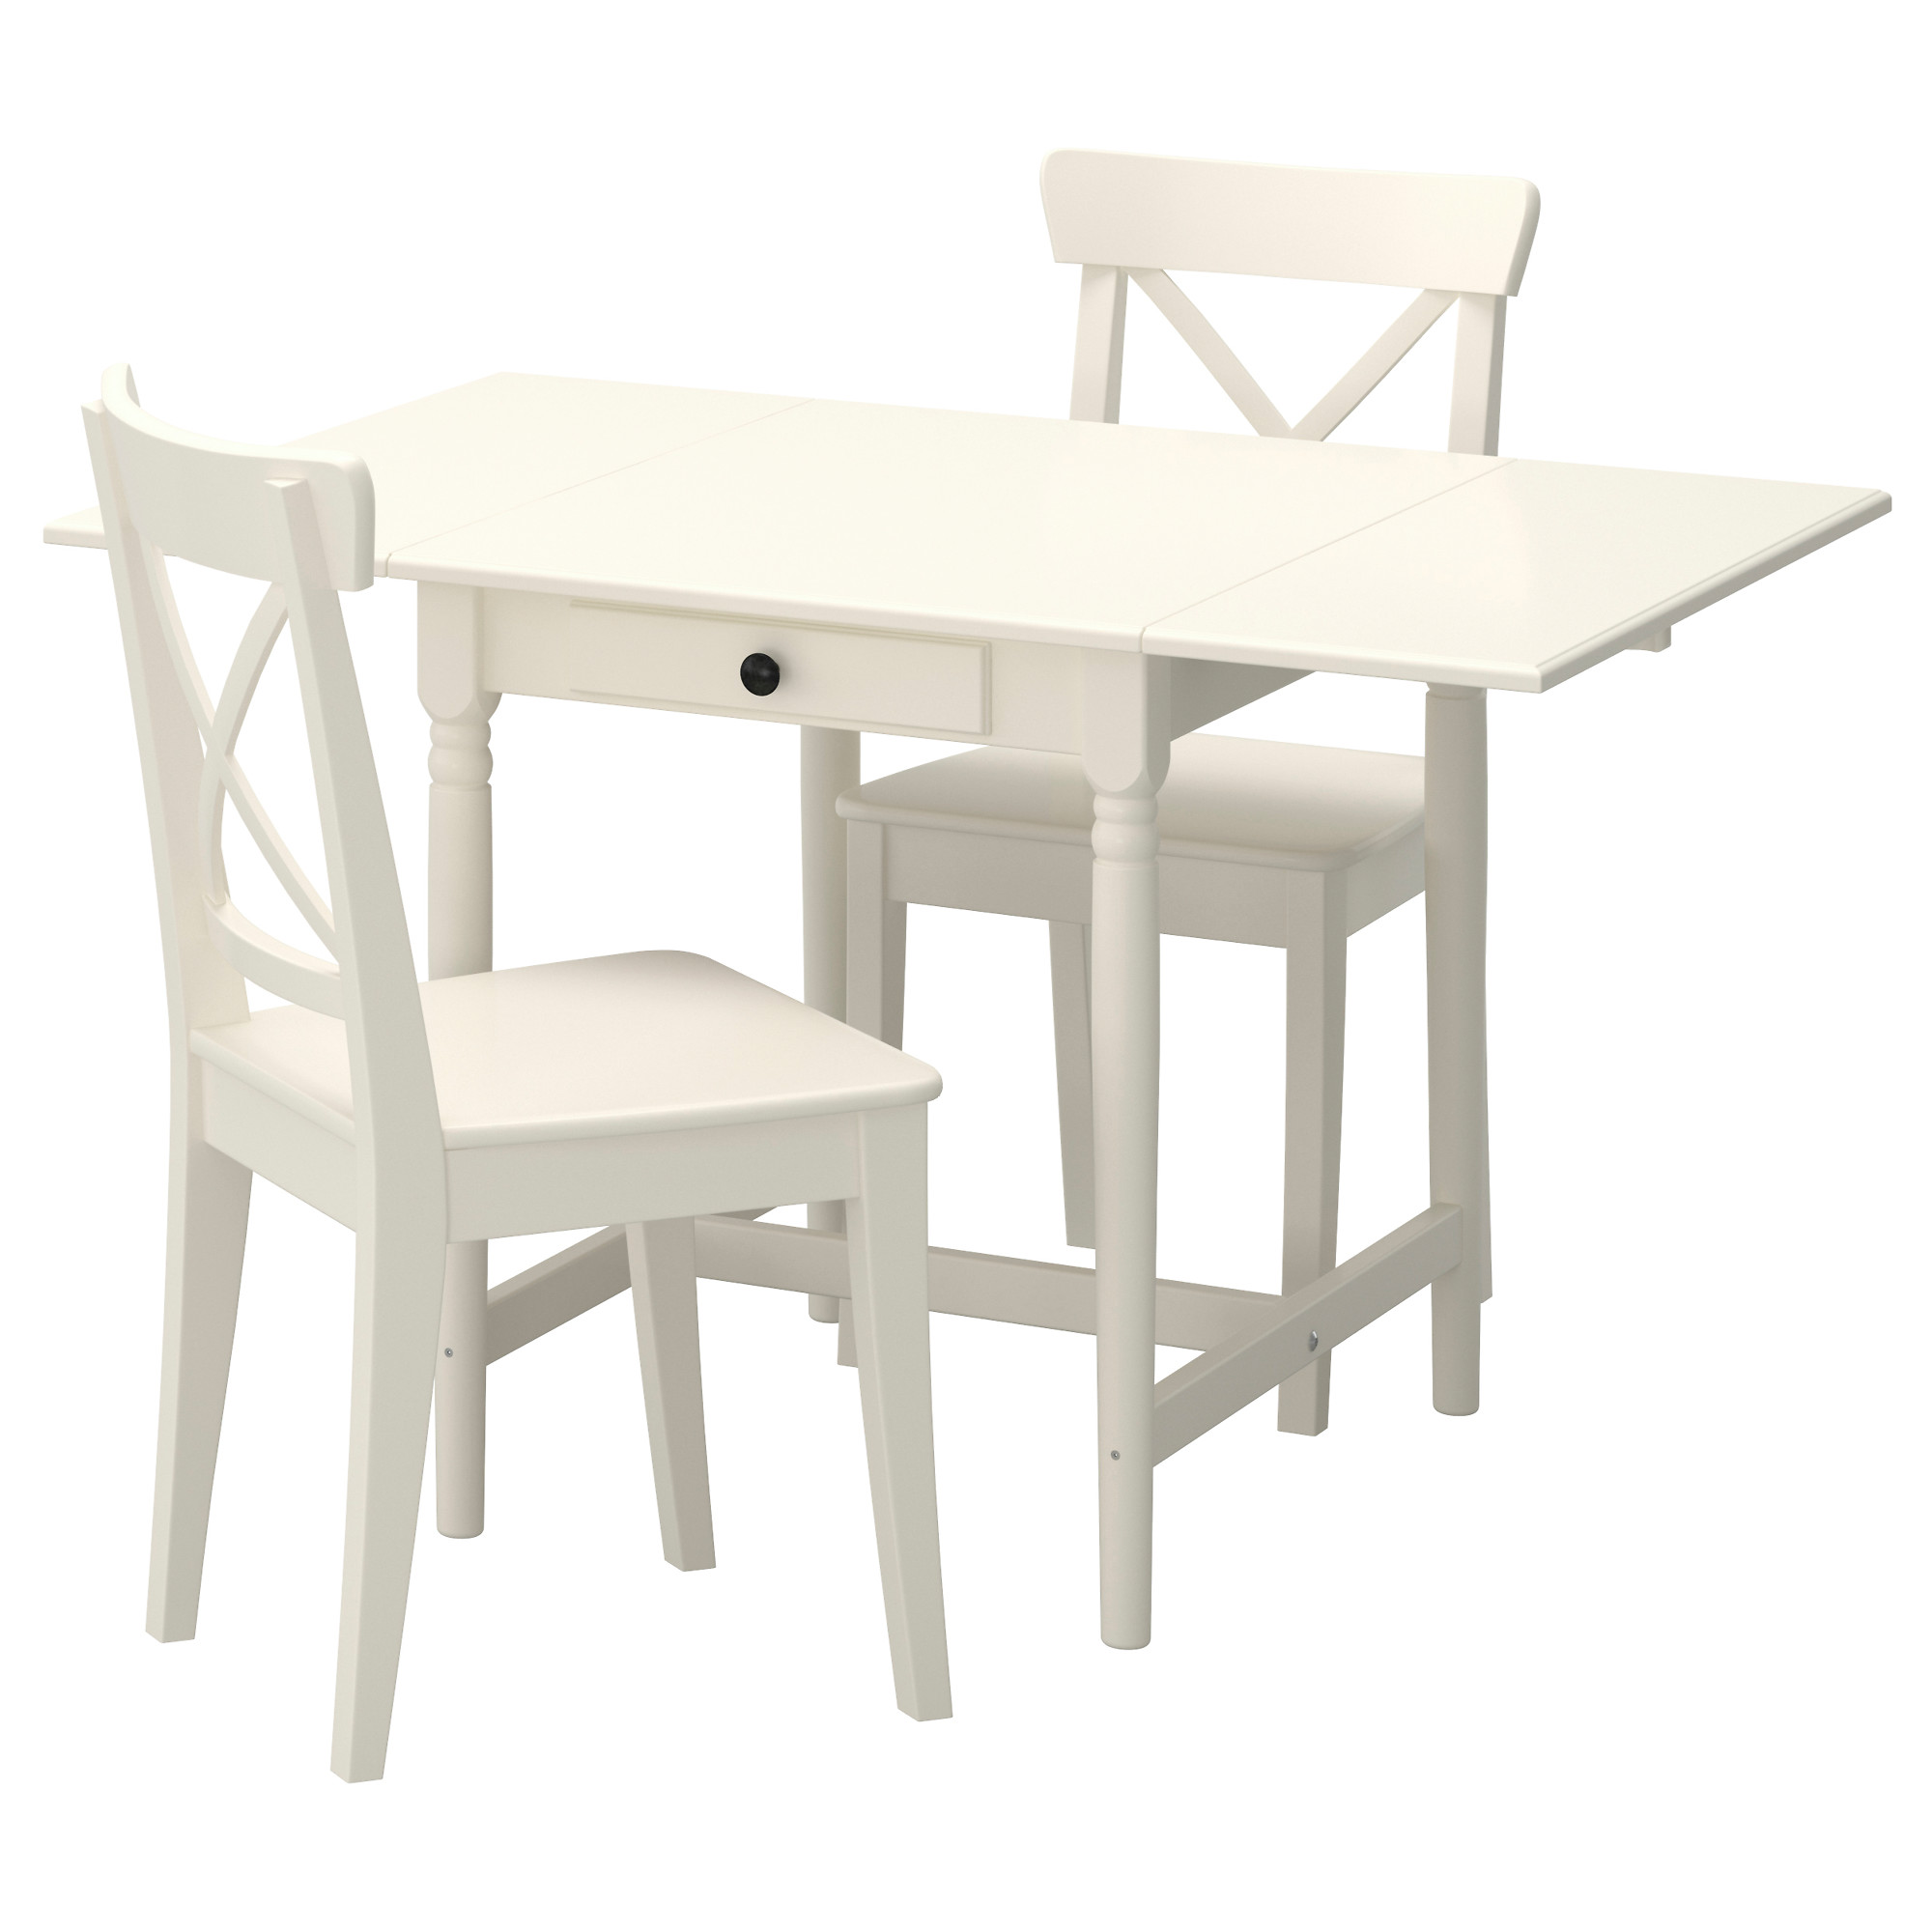 Икеа стол кухонный белый. Ingatorp ИНГАТОРП / Ingolf Ингольф стол и 2 стула, белый/белый. Стол икеа кухонный ИНГАТОРП. Стол икеа белый ИНГАТОРП. Стол стулья икеа ИНГАТОРП.